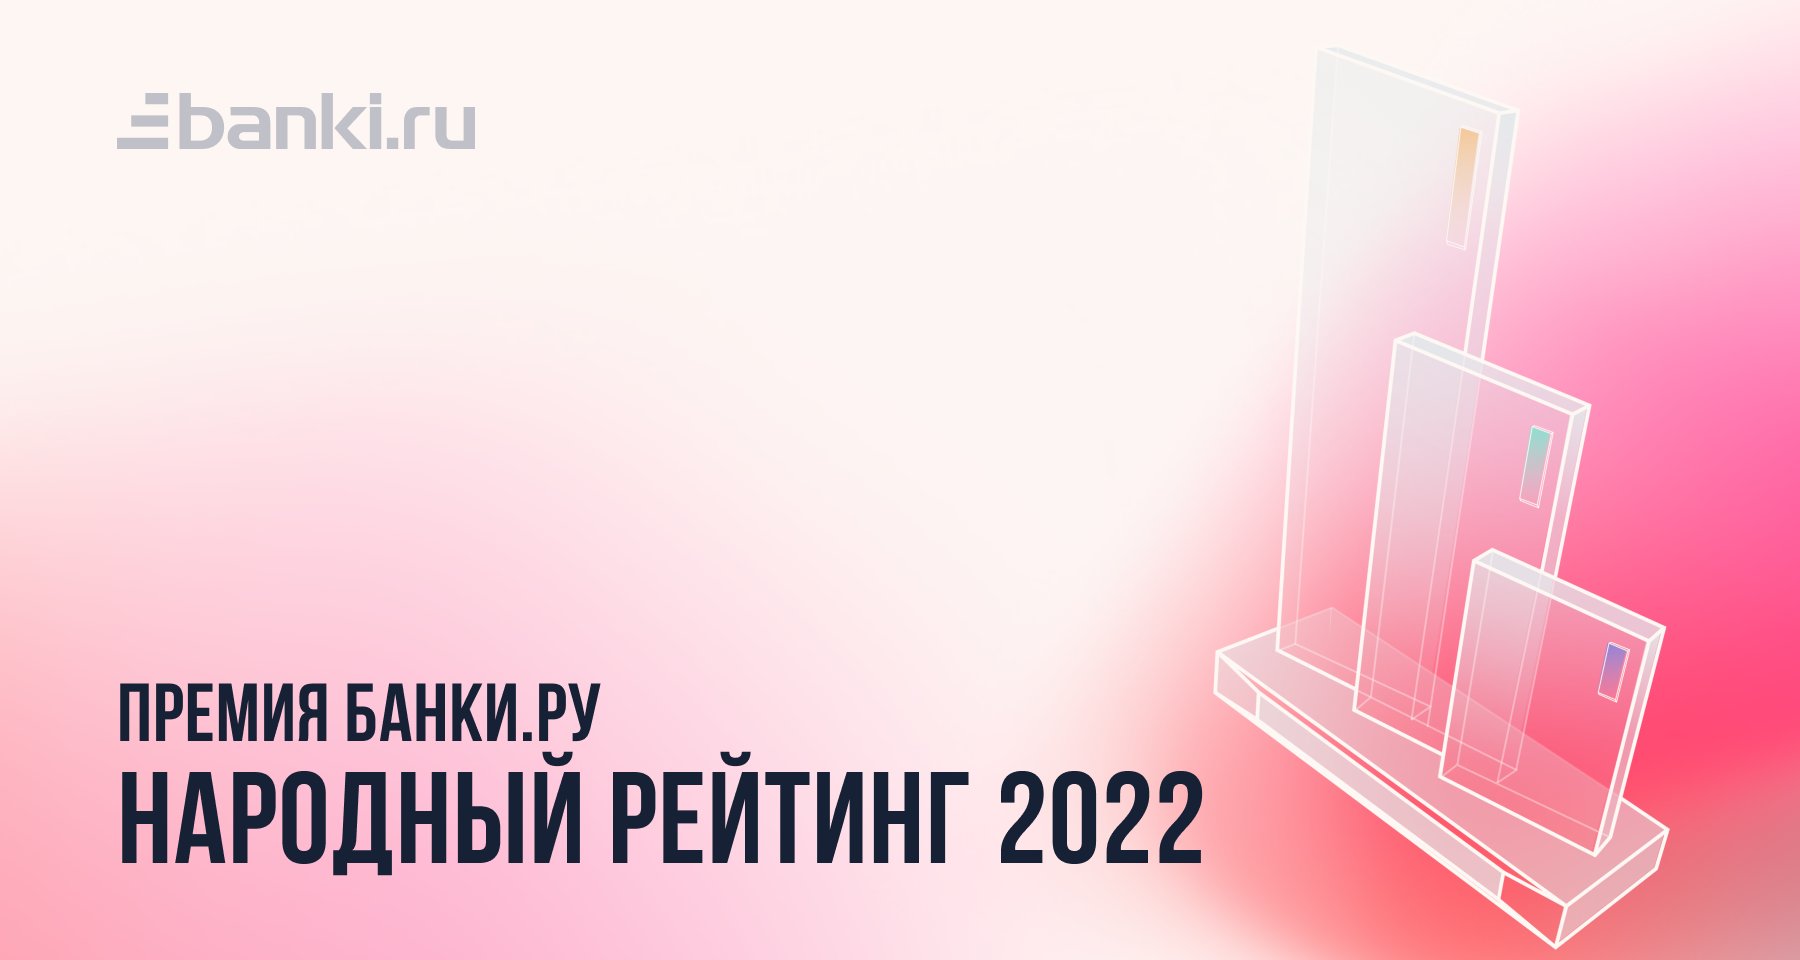 Банки.ру назвал победителей Народного рейтинга — 2022